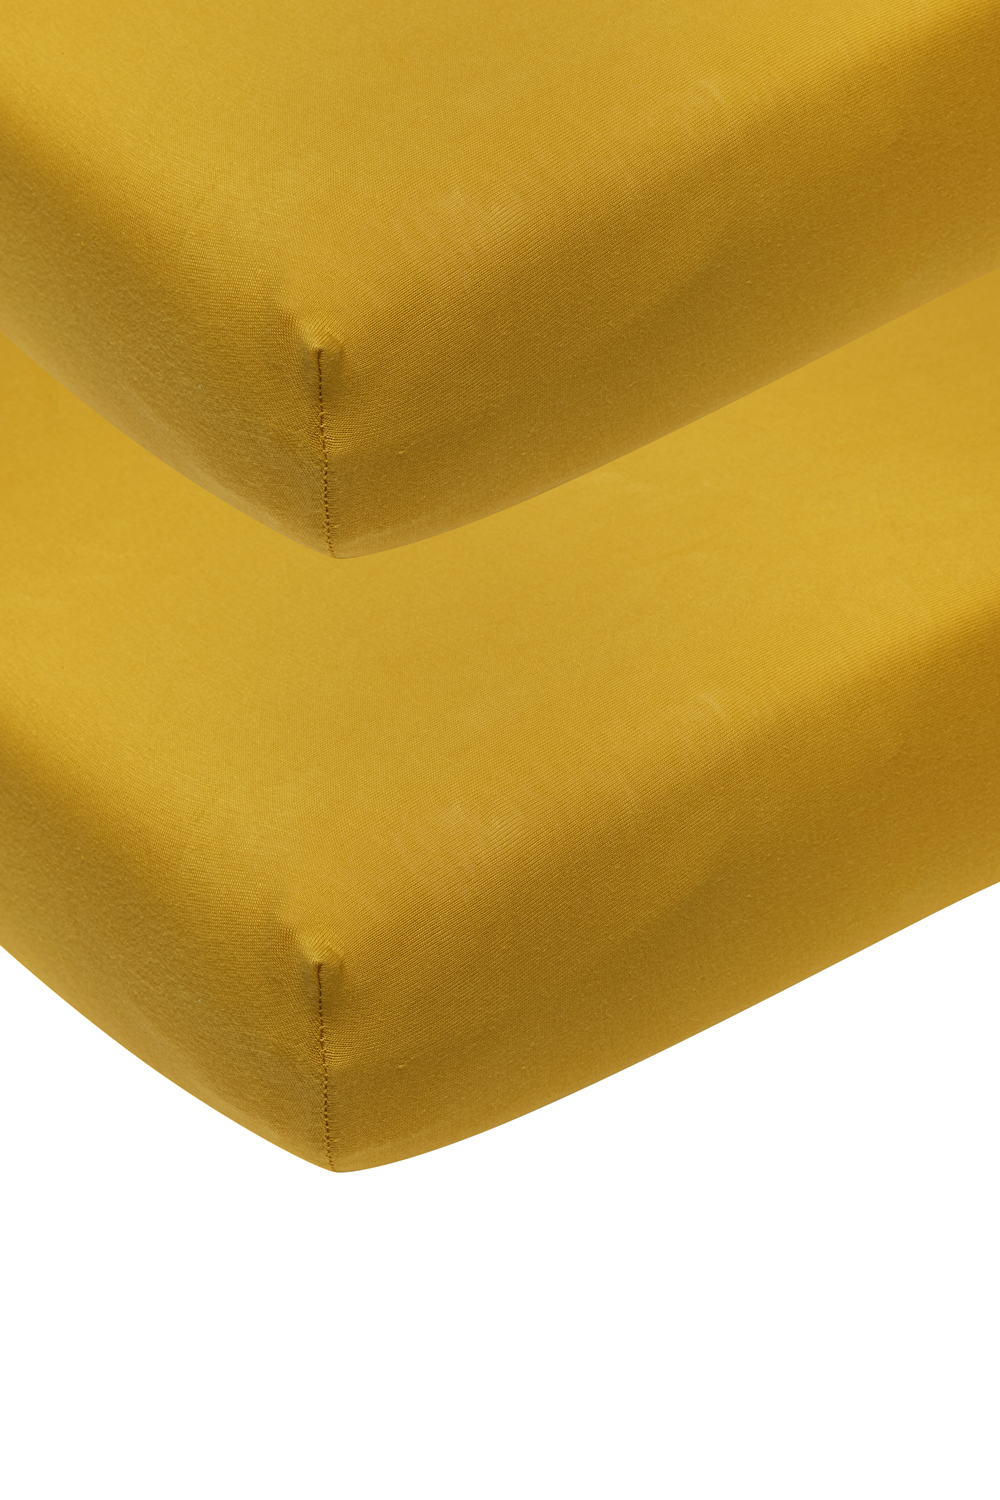 Jersey Fitted Sheet 2-Pack - Ocher Yellow - 60X120cm